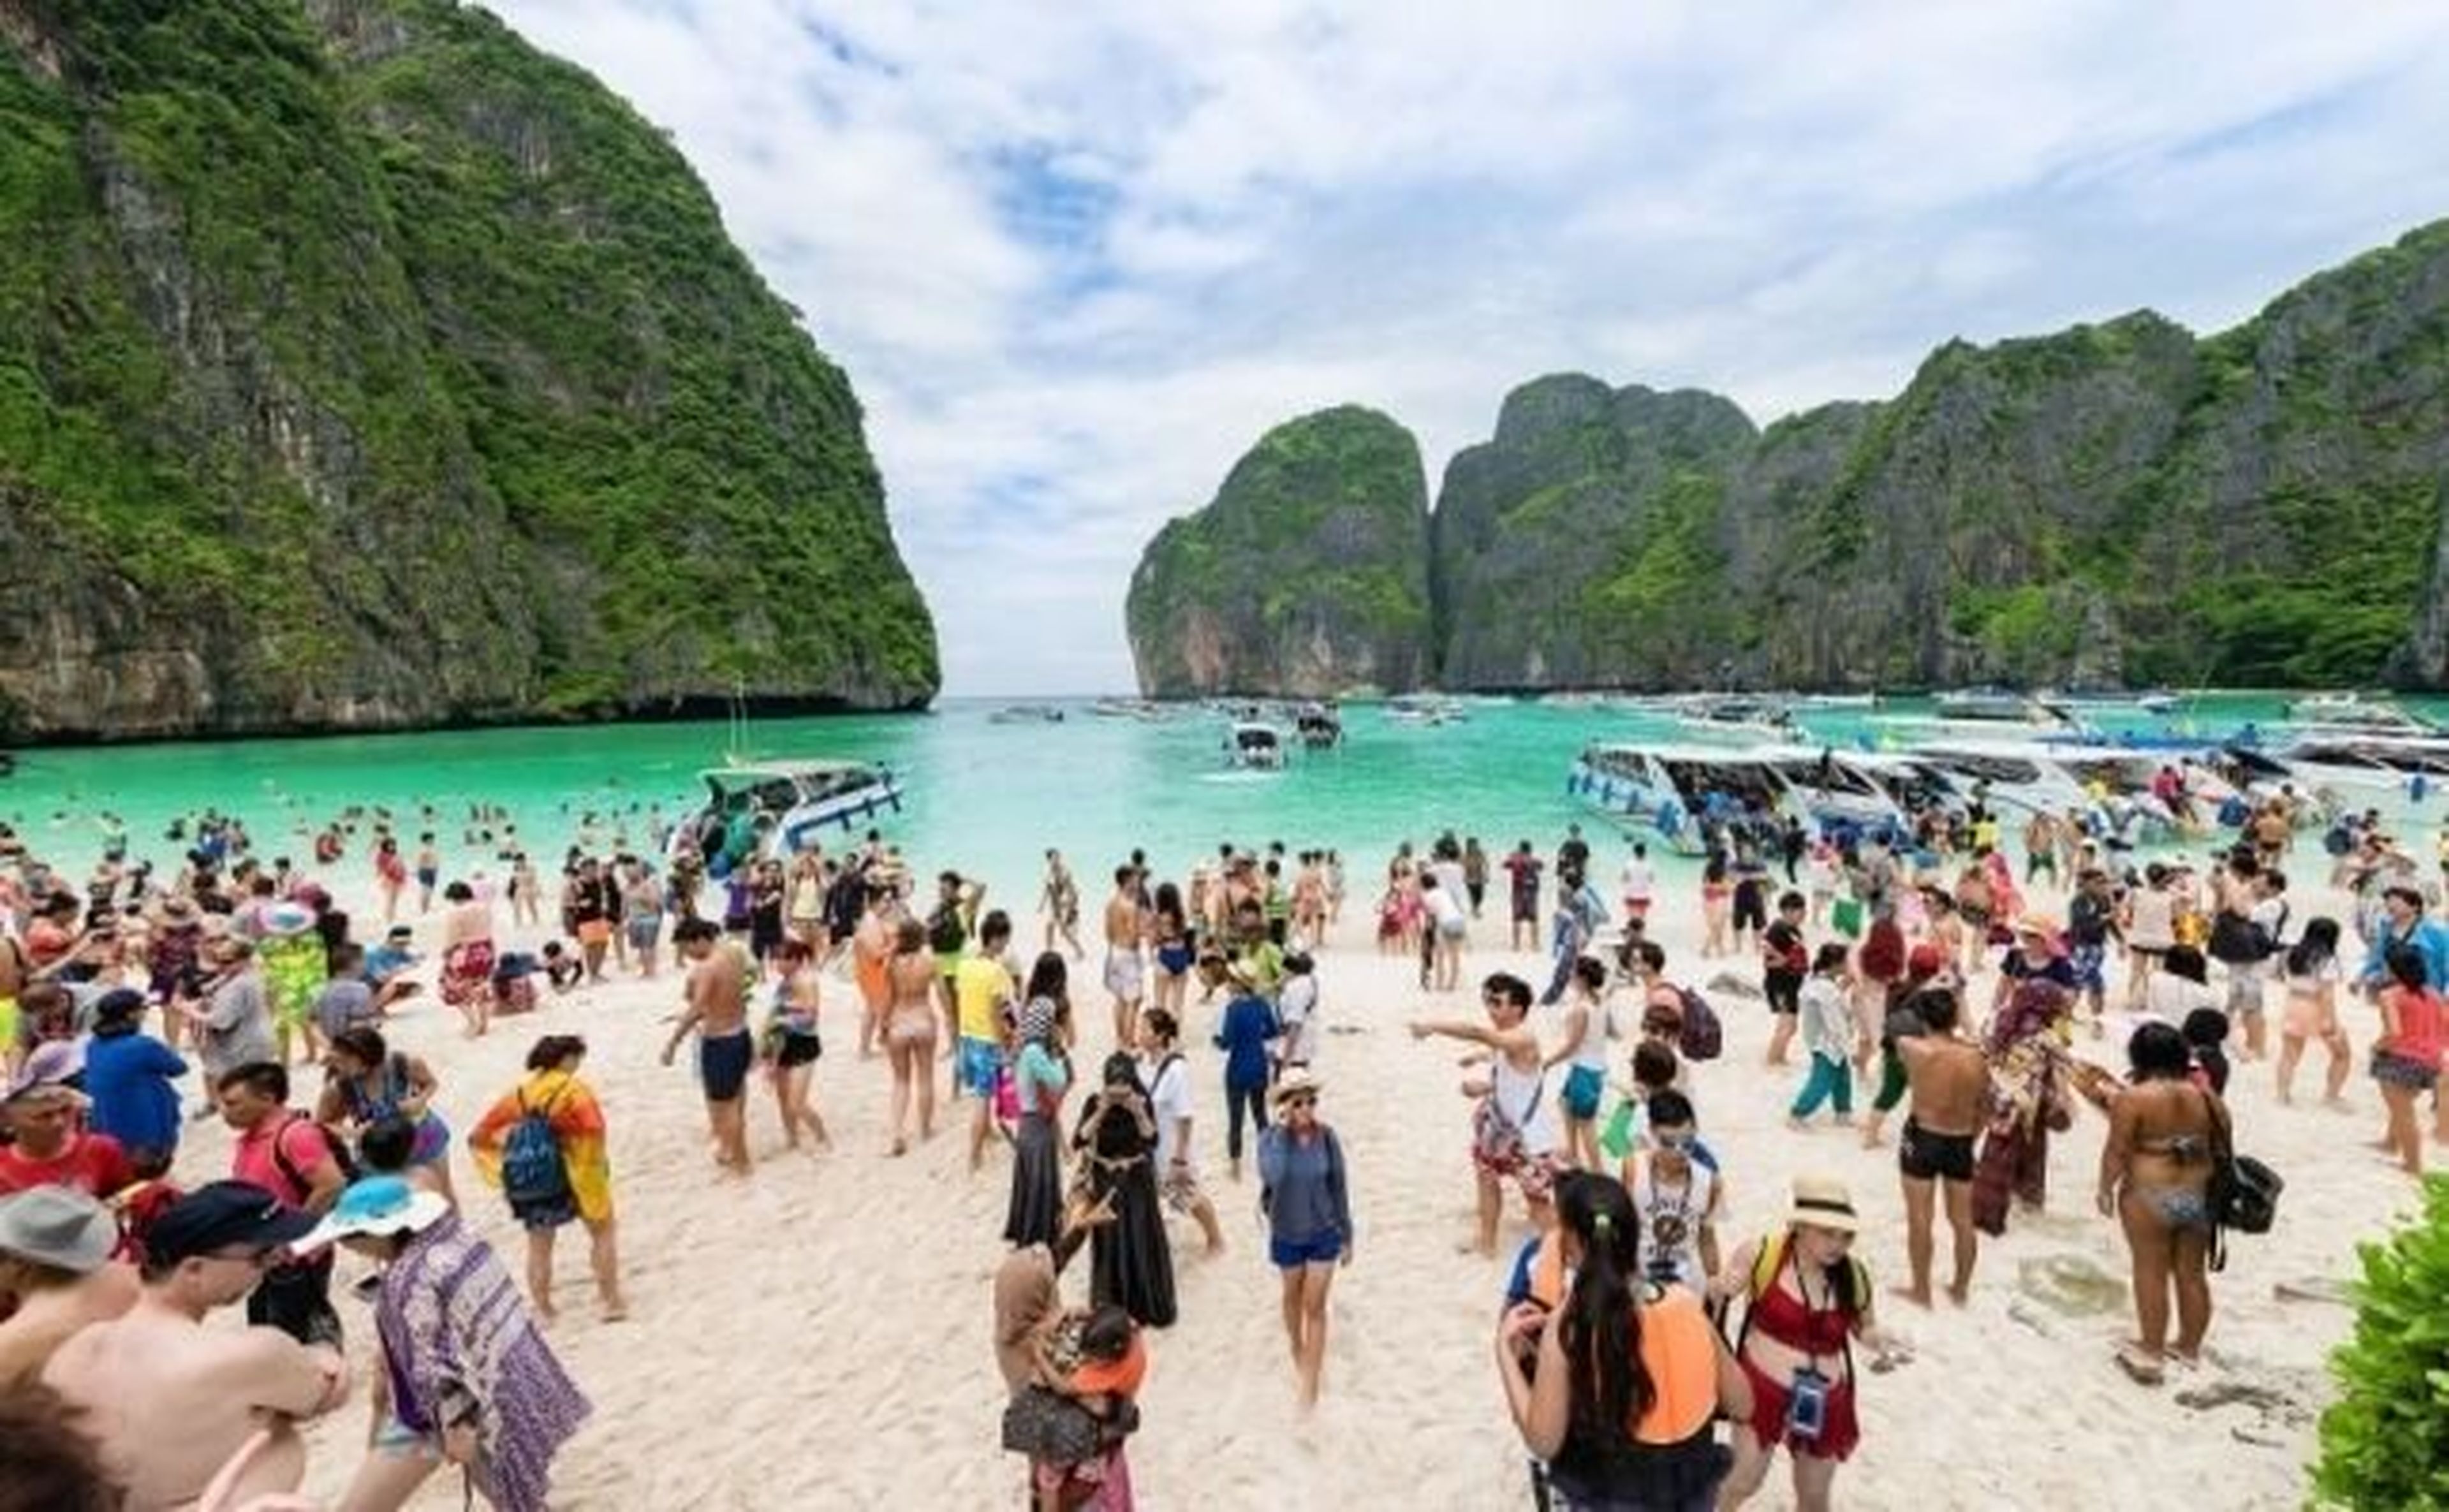 La alta presión turística llevó al gobierno de Tailandia a prohibir las visitas a la playa de Maya Bay.